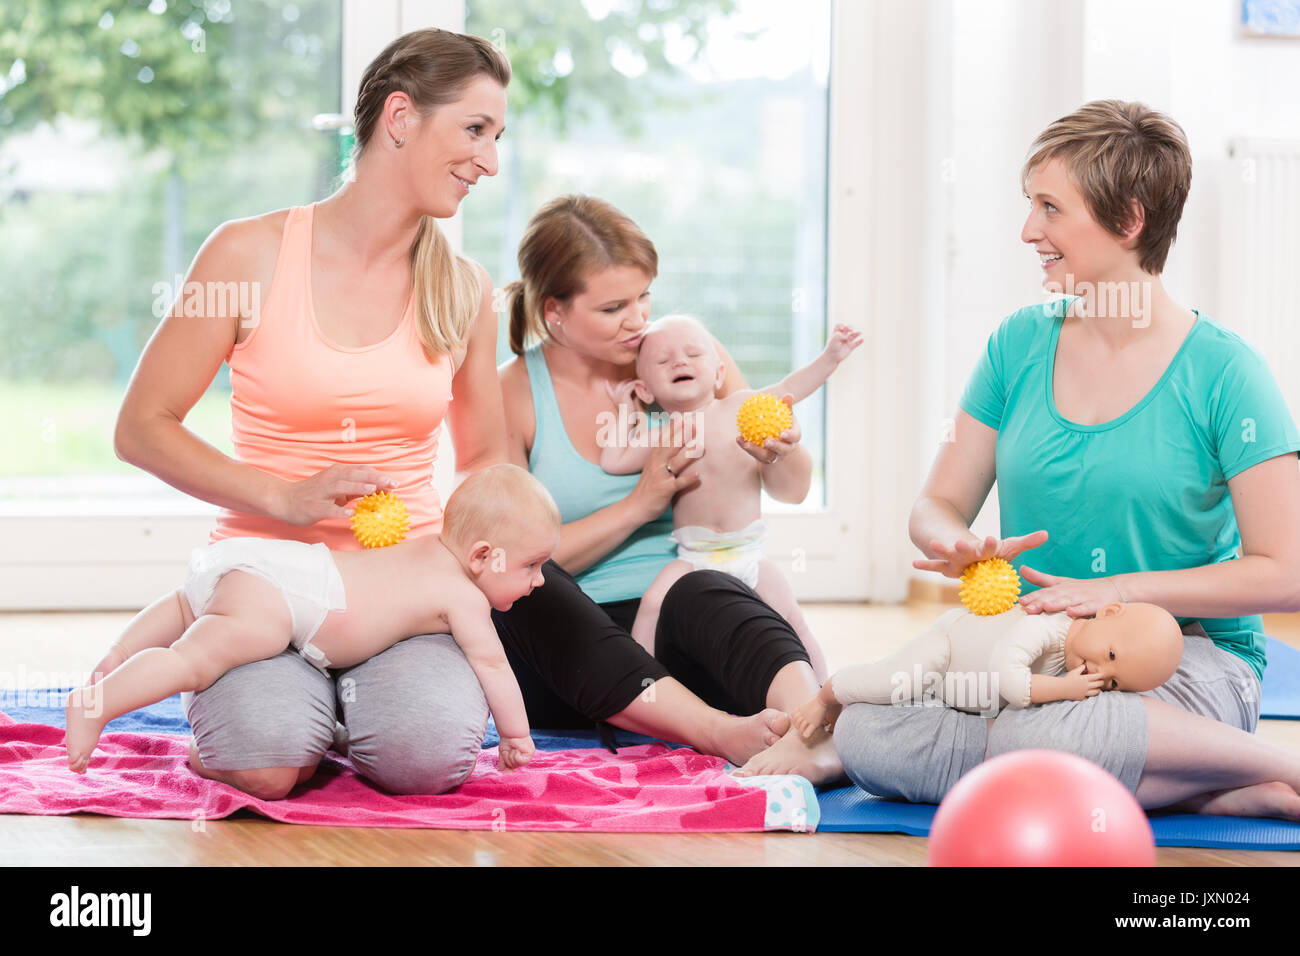 Les jeunes femmes pratiquant massage pour leurs bébés dans la relation mère-enfant Banque D'Images